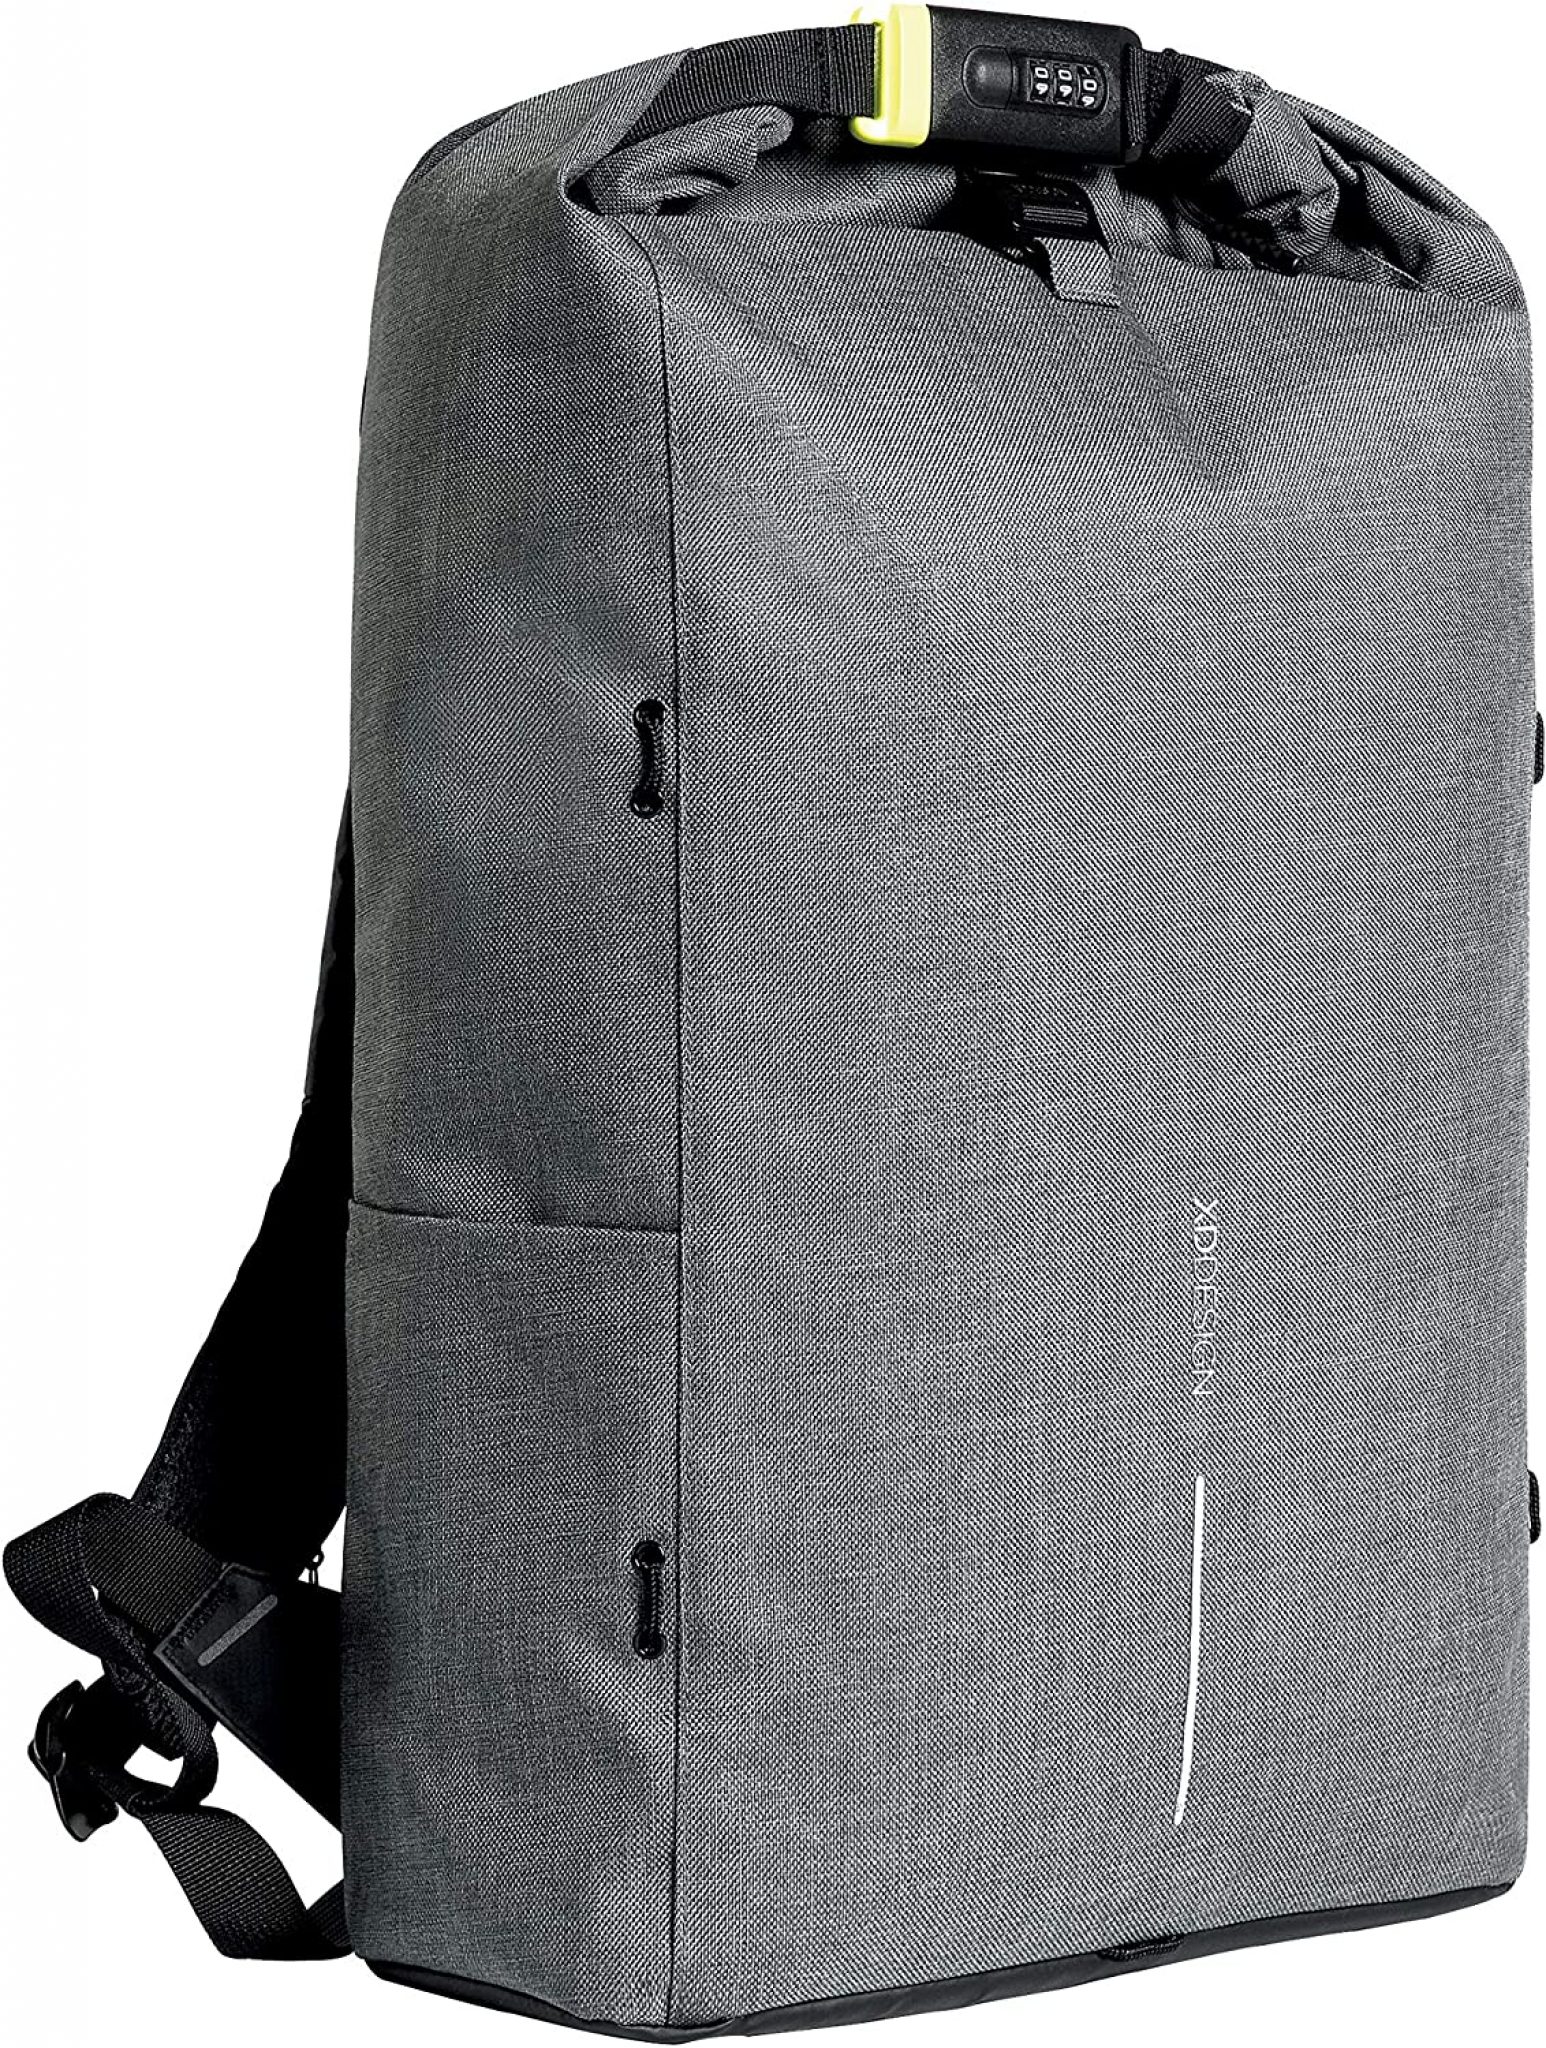 xdesign backpack